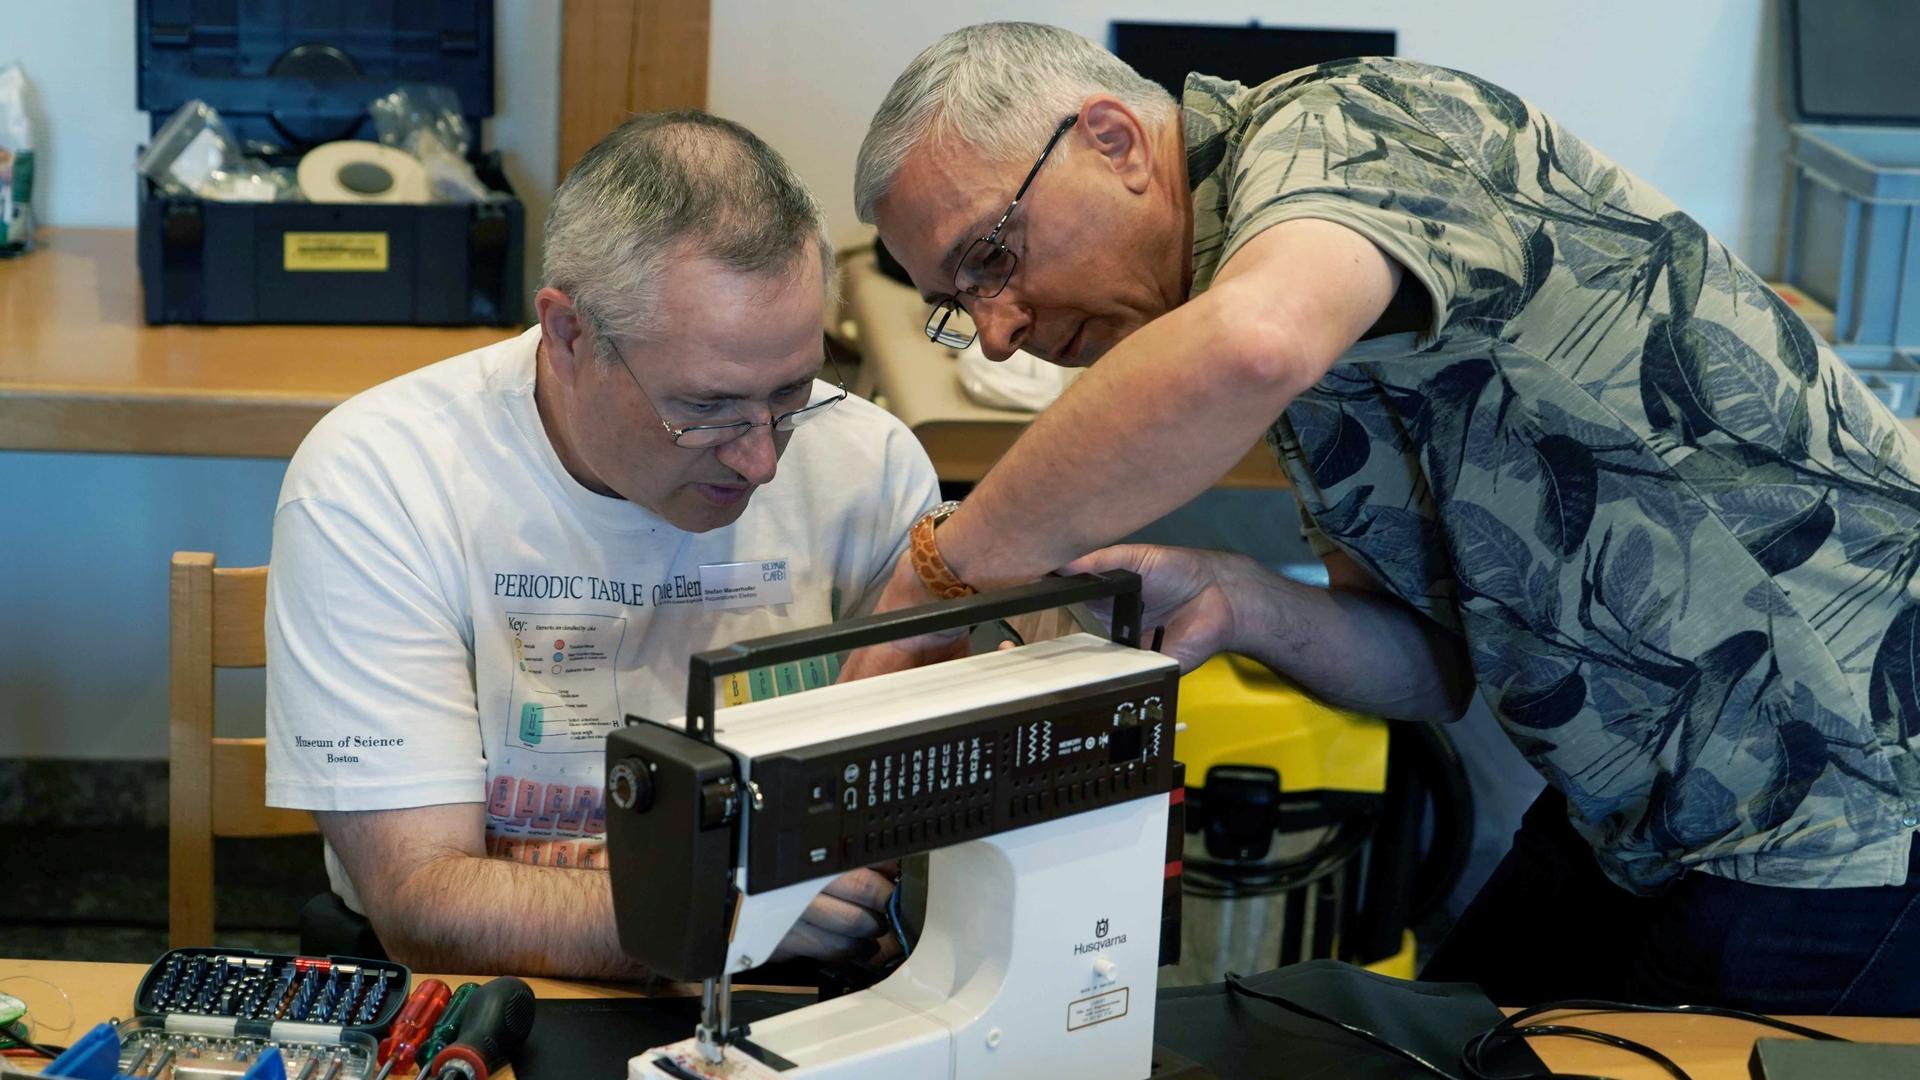 Zwei Mitarbeiter eines Repair-Cafes reparieren eine Nähmaschine.